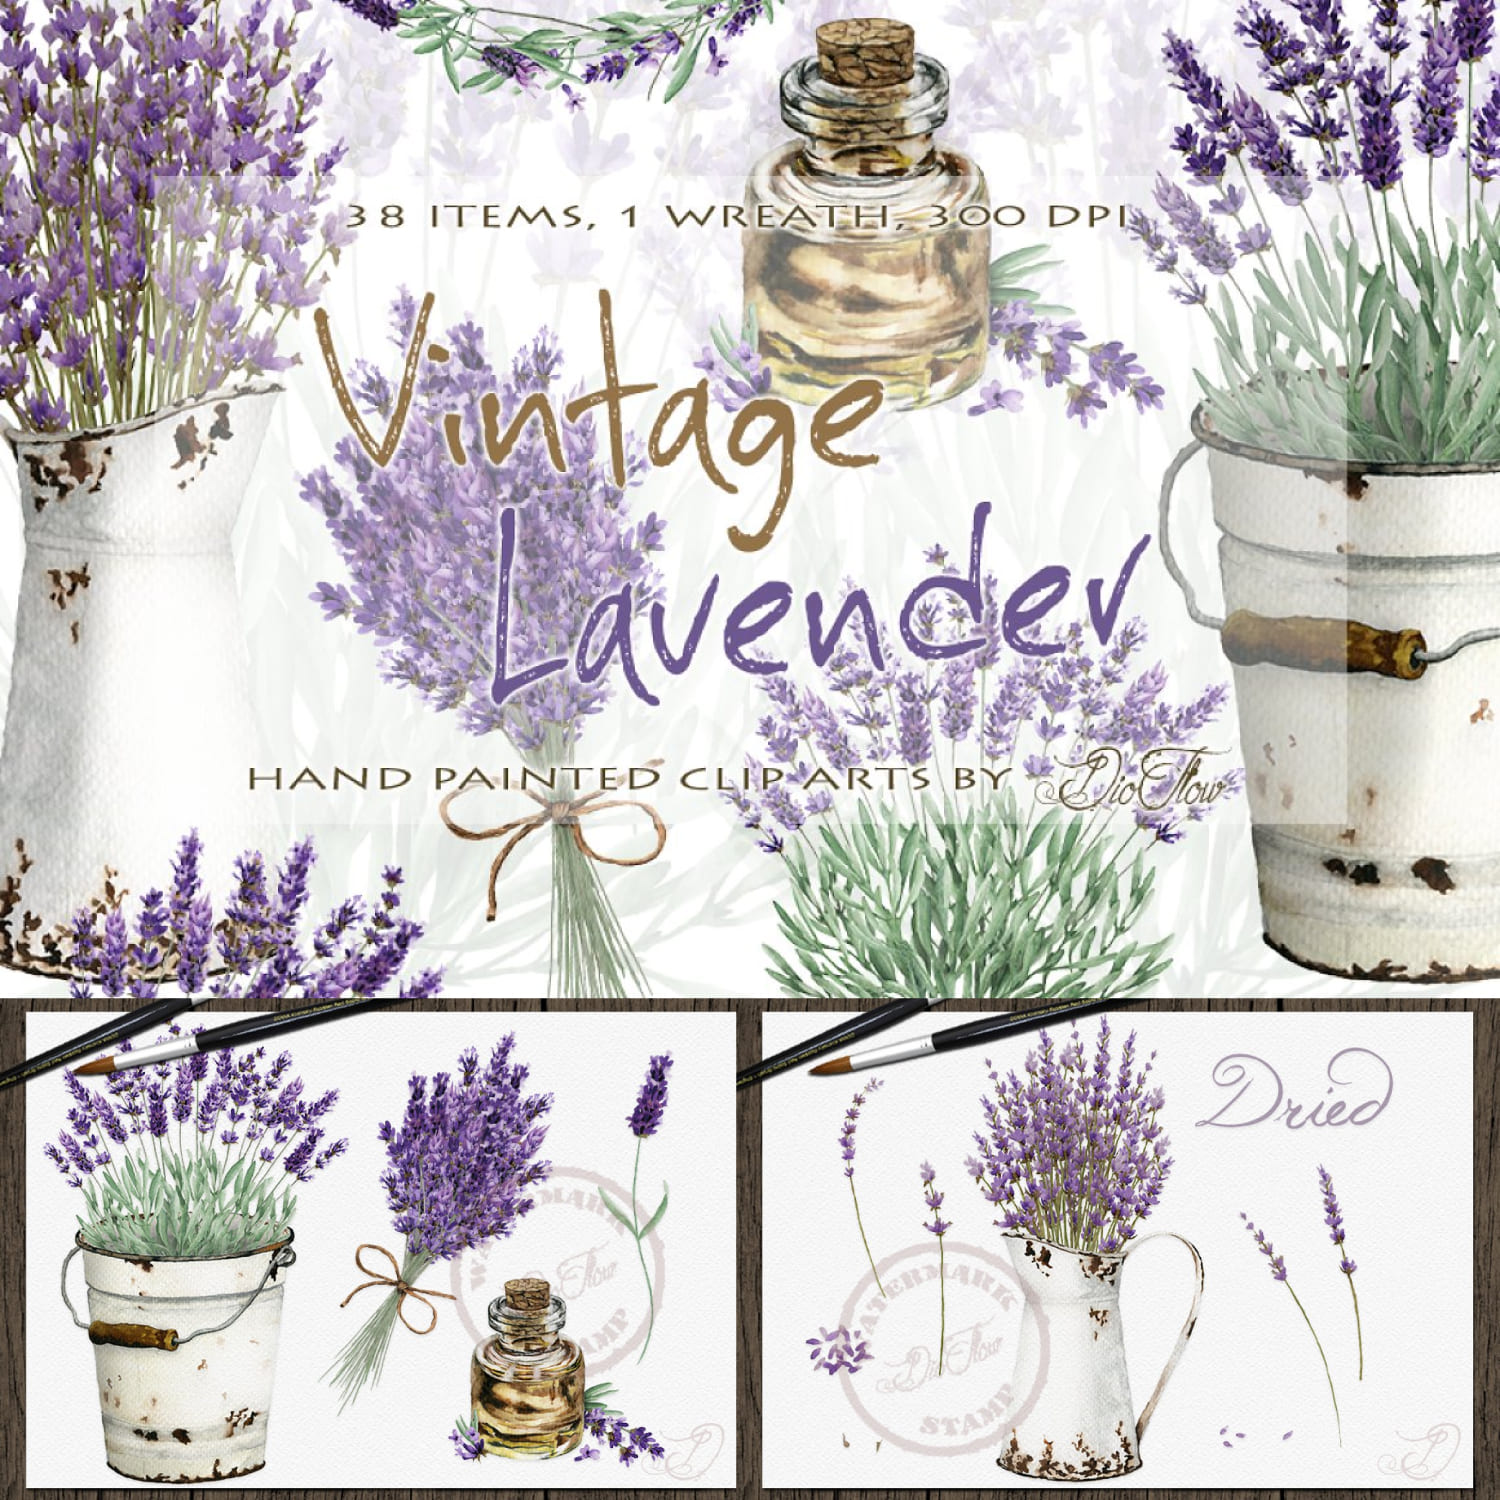 Vintage Lavender Watercolor Clip Art cover image.